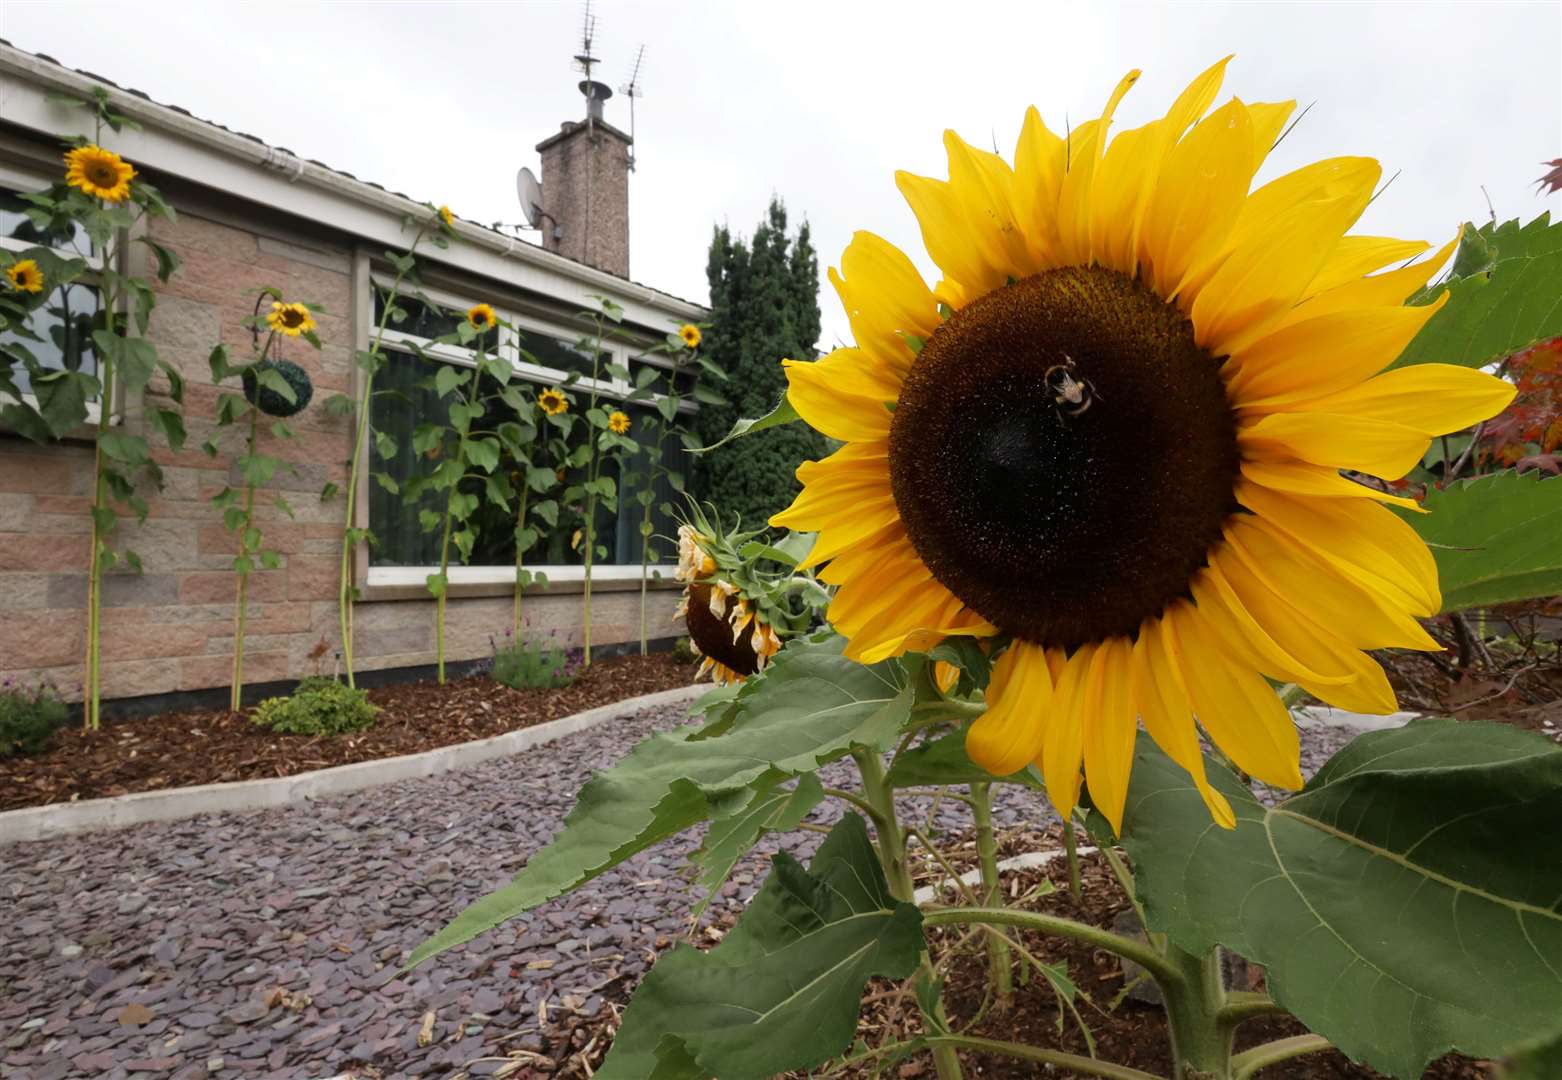 The sunflowers in Derek Mackay's garden Picture: James Mackenzie